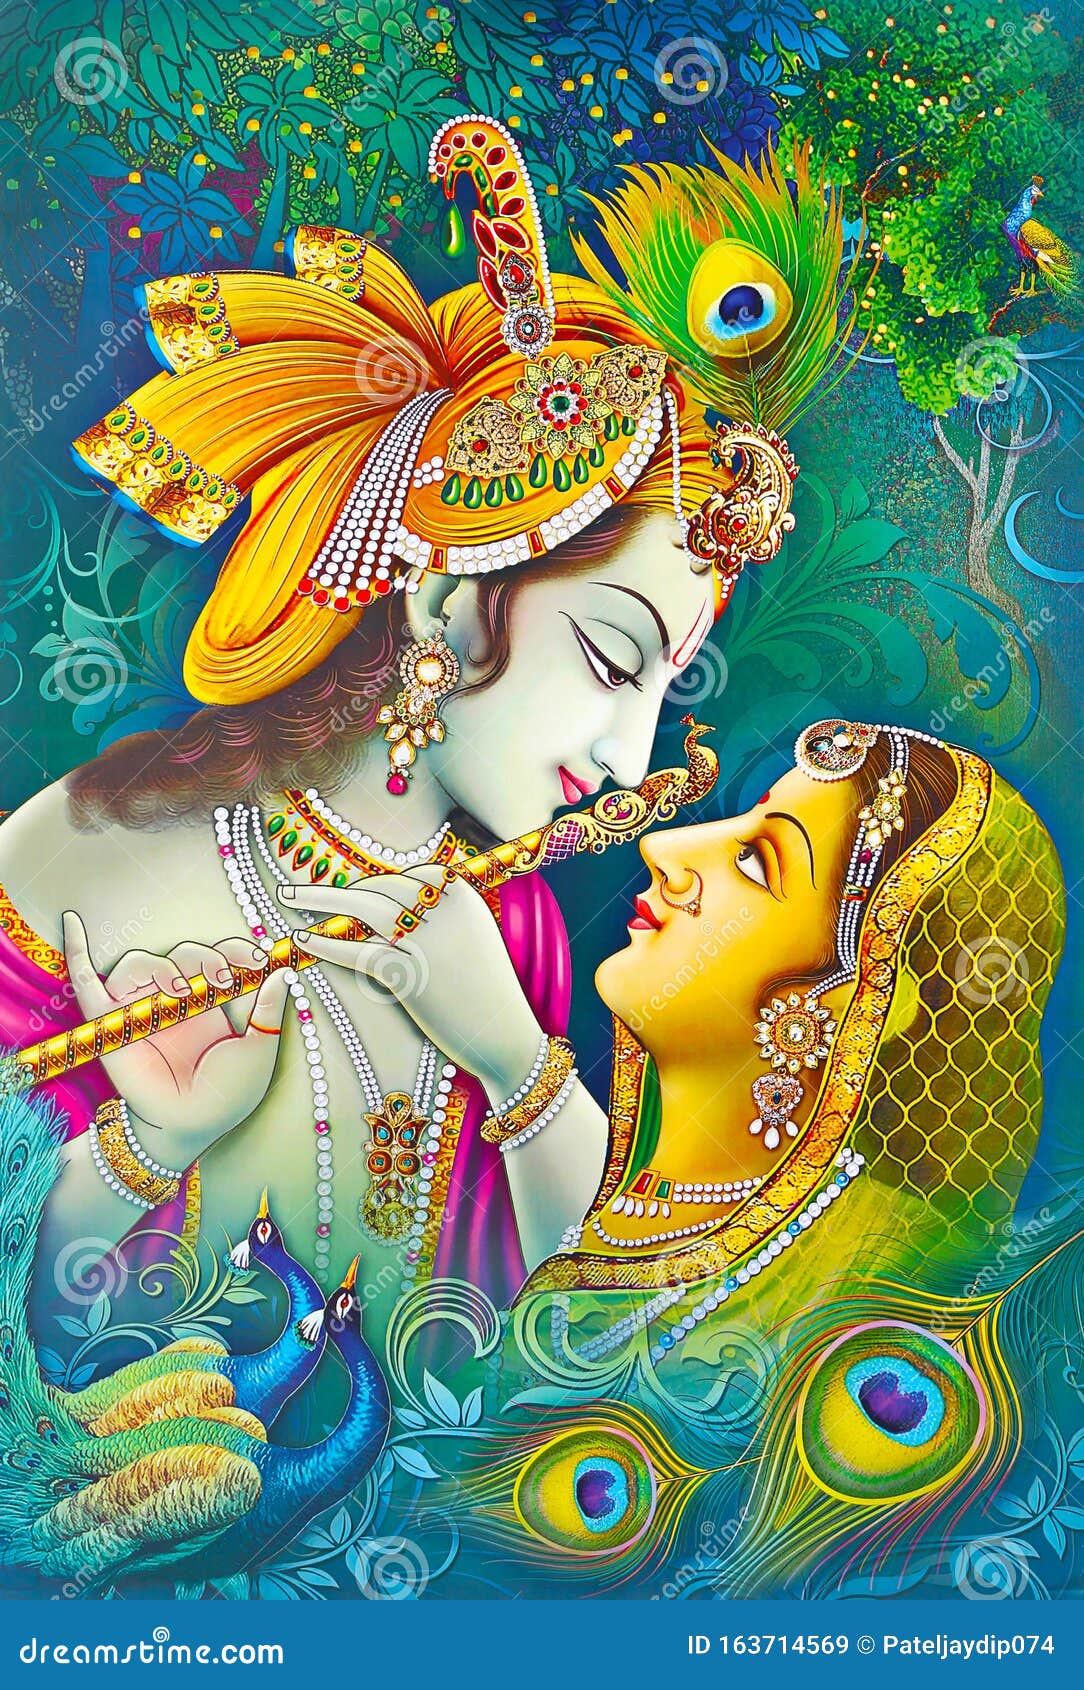 Lord Radha Krishna Schones Wallpaper Stockbild Bild Von Dekorativ Beschaffenheit 163714569